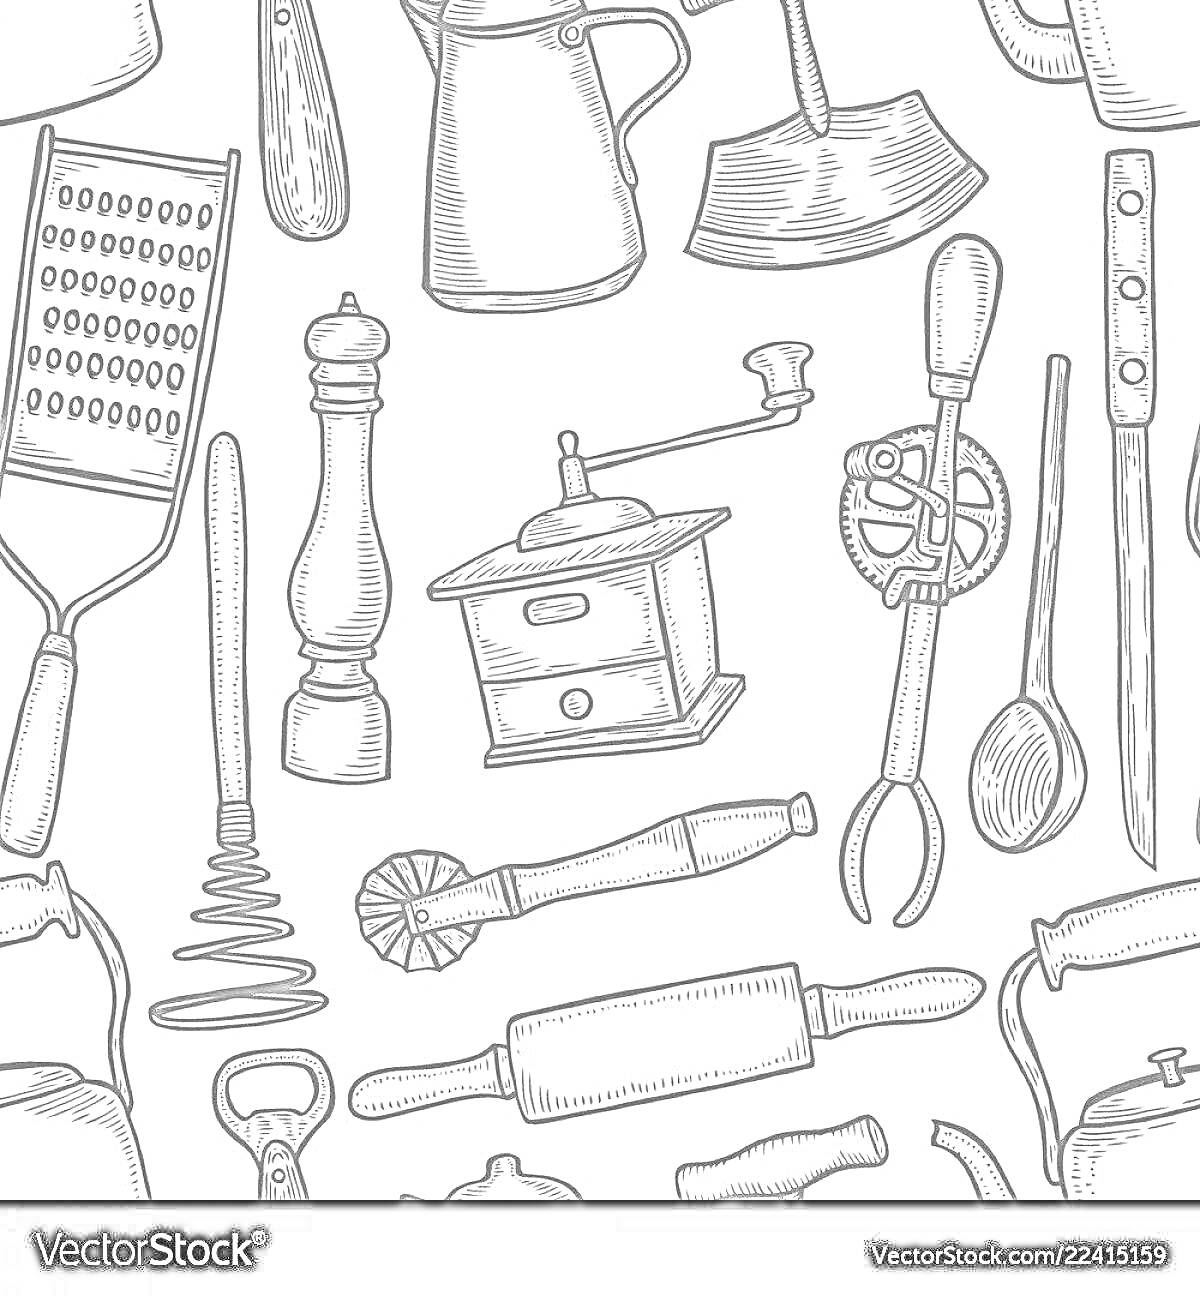 Кухонные инструменты: терка, перечница, молочник, кофемолка, форма для выпечки, миксер для теста, венчик, скалка, нож, штопор, ложка, нож для теста, кренделевая машинка